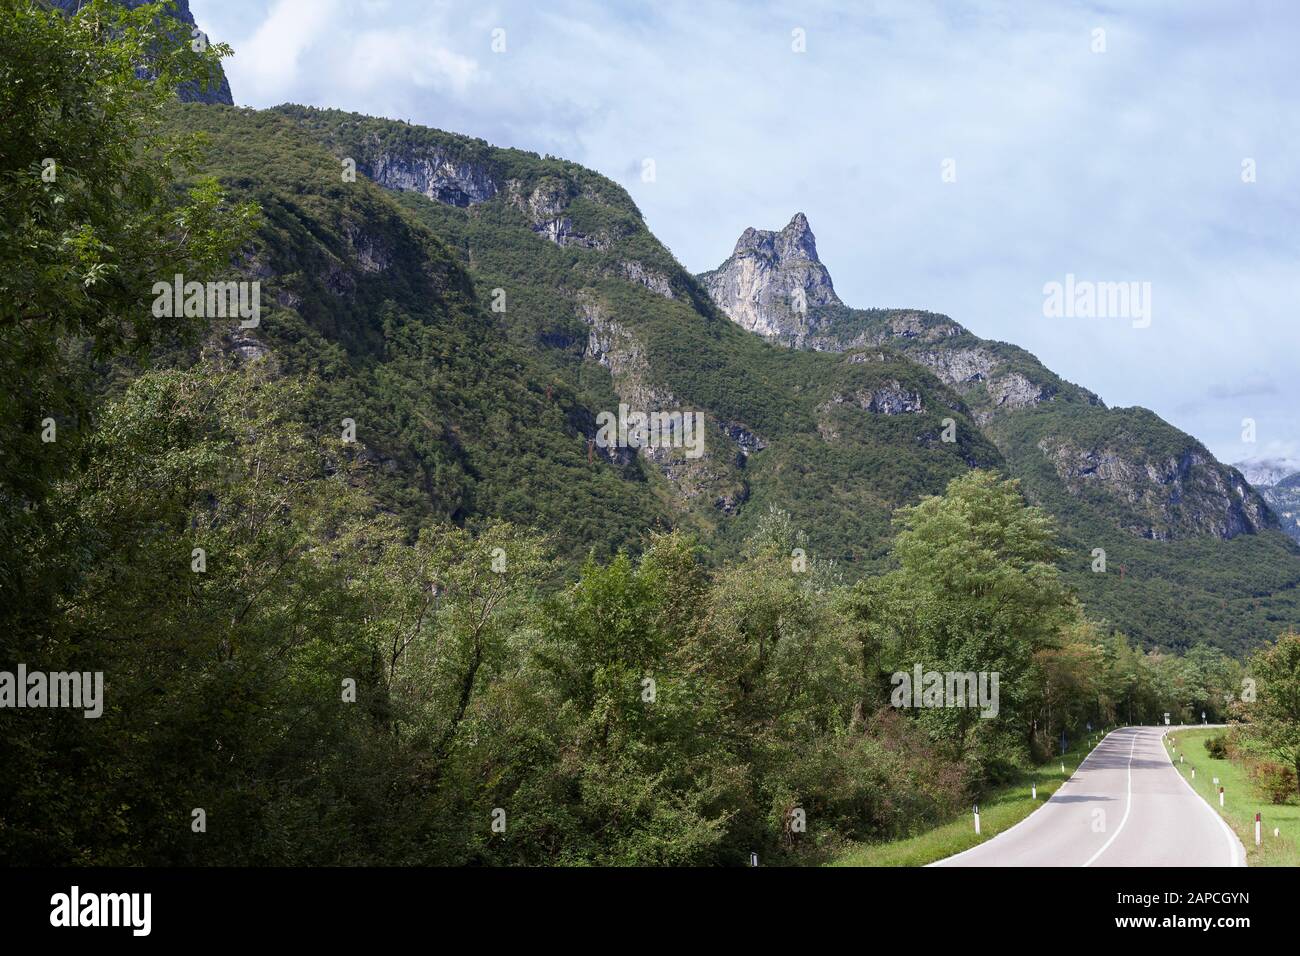 View of the Monti del Sole mountains in the Belluno Dolomites from the Val Cordevole, near Sedico, Province of Belluno, Veneto, Italy Stock Photo